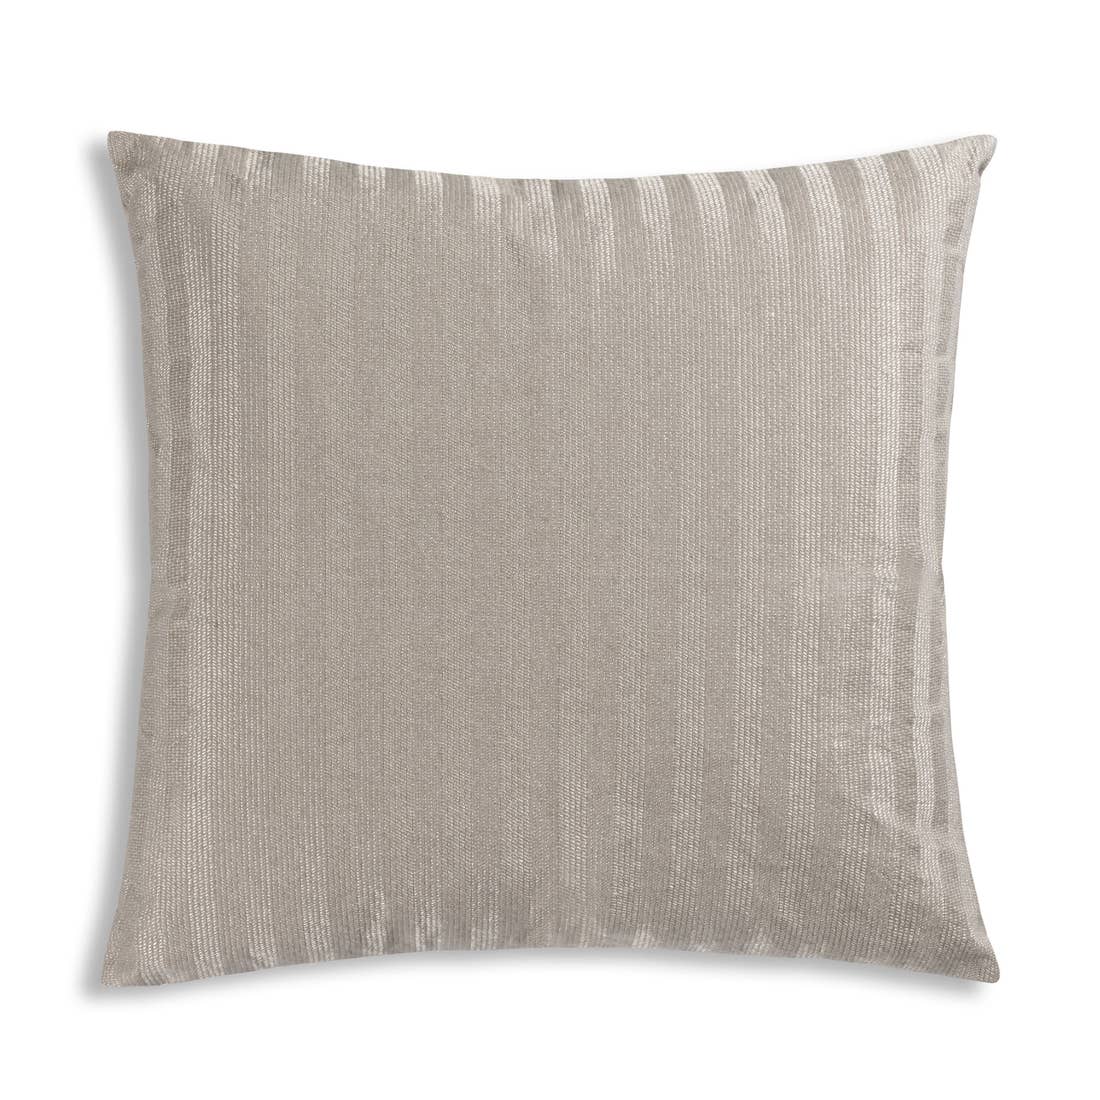 Striped Metallic Pillow